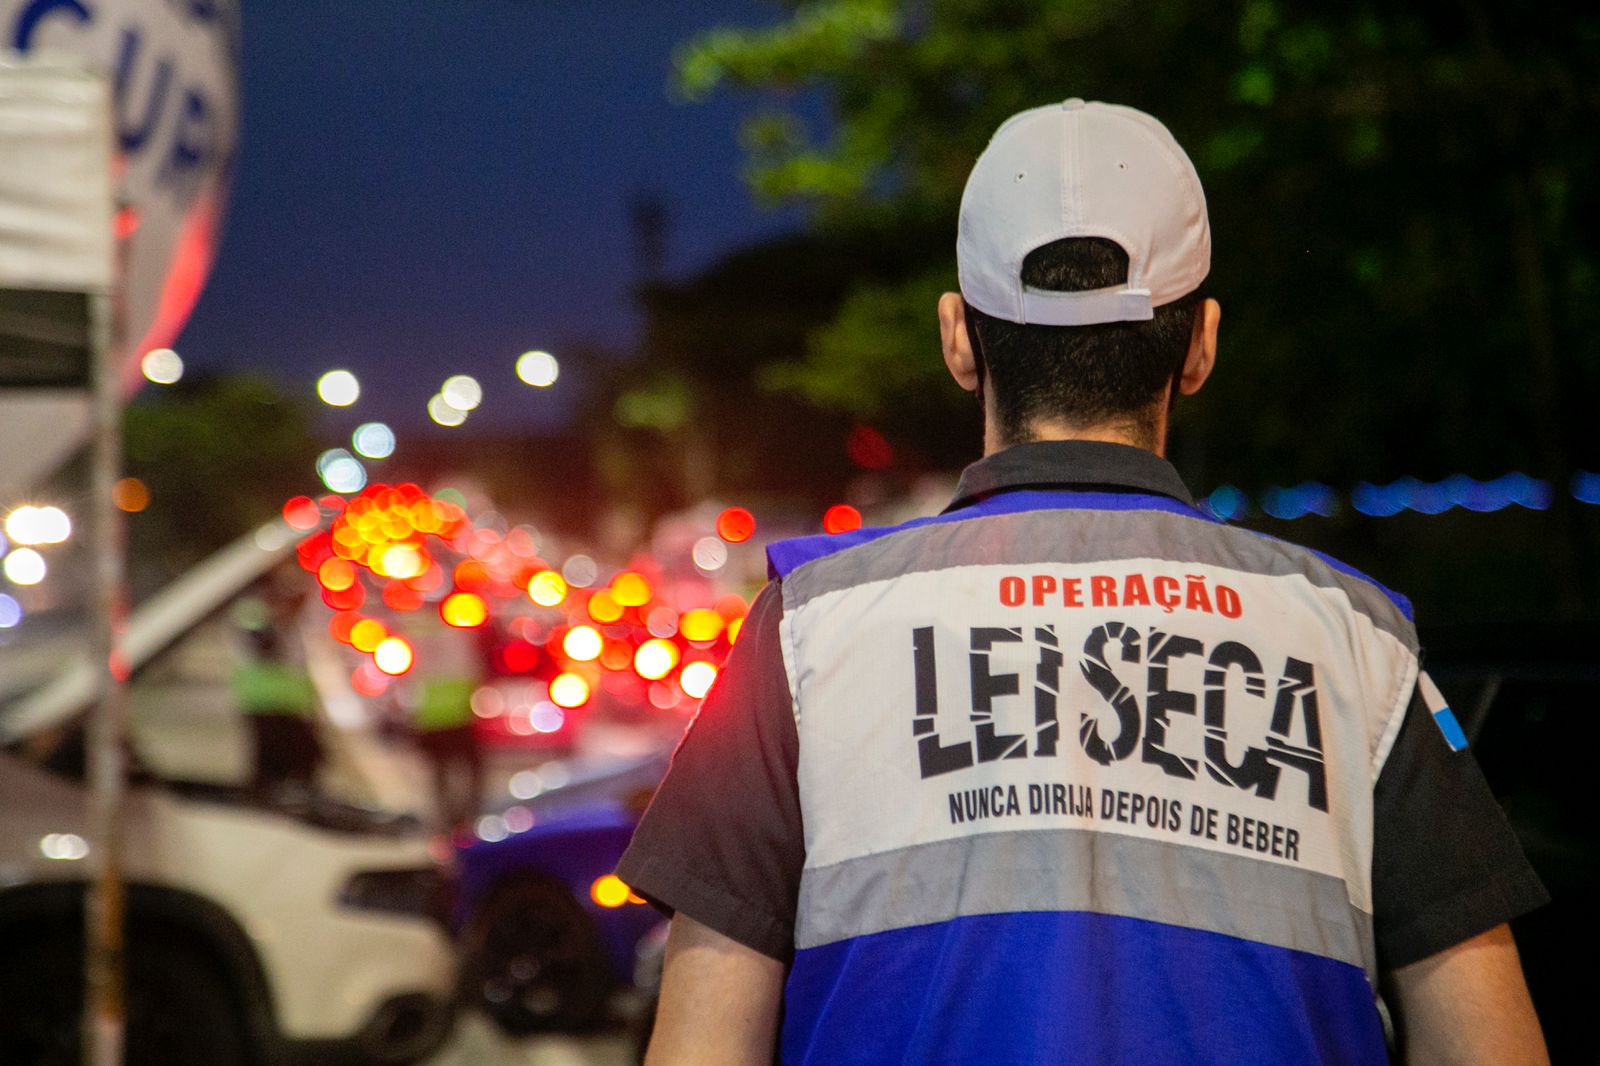 Operação Lei Seca atuará na Sapucaí durante o Carnaval